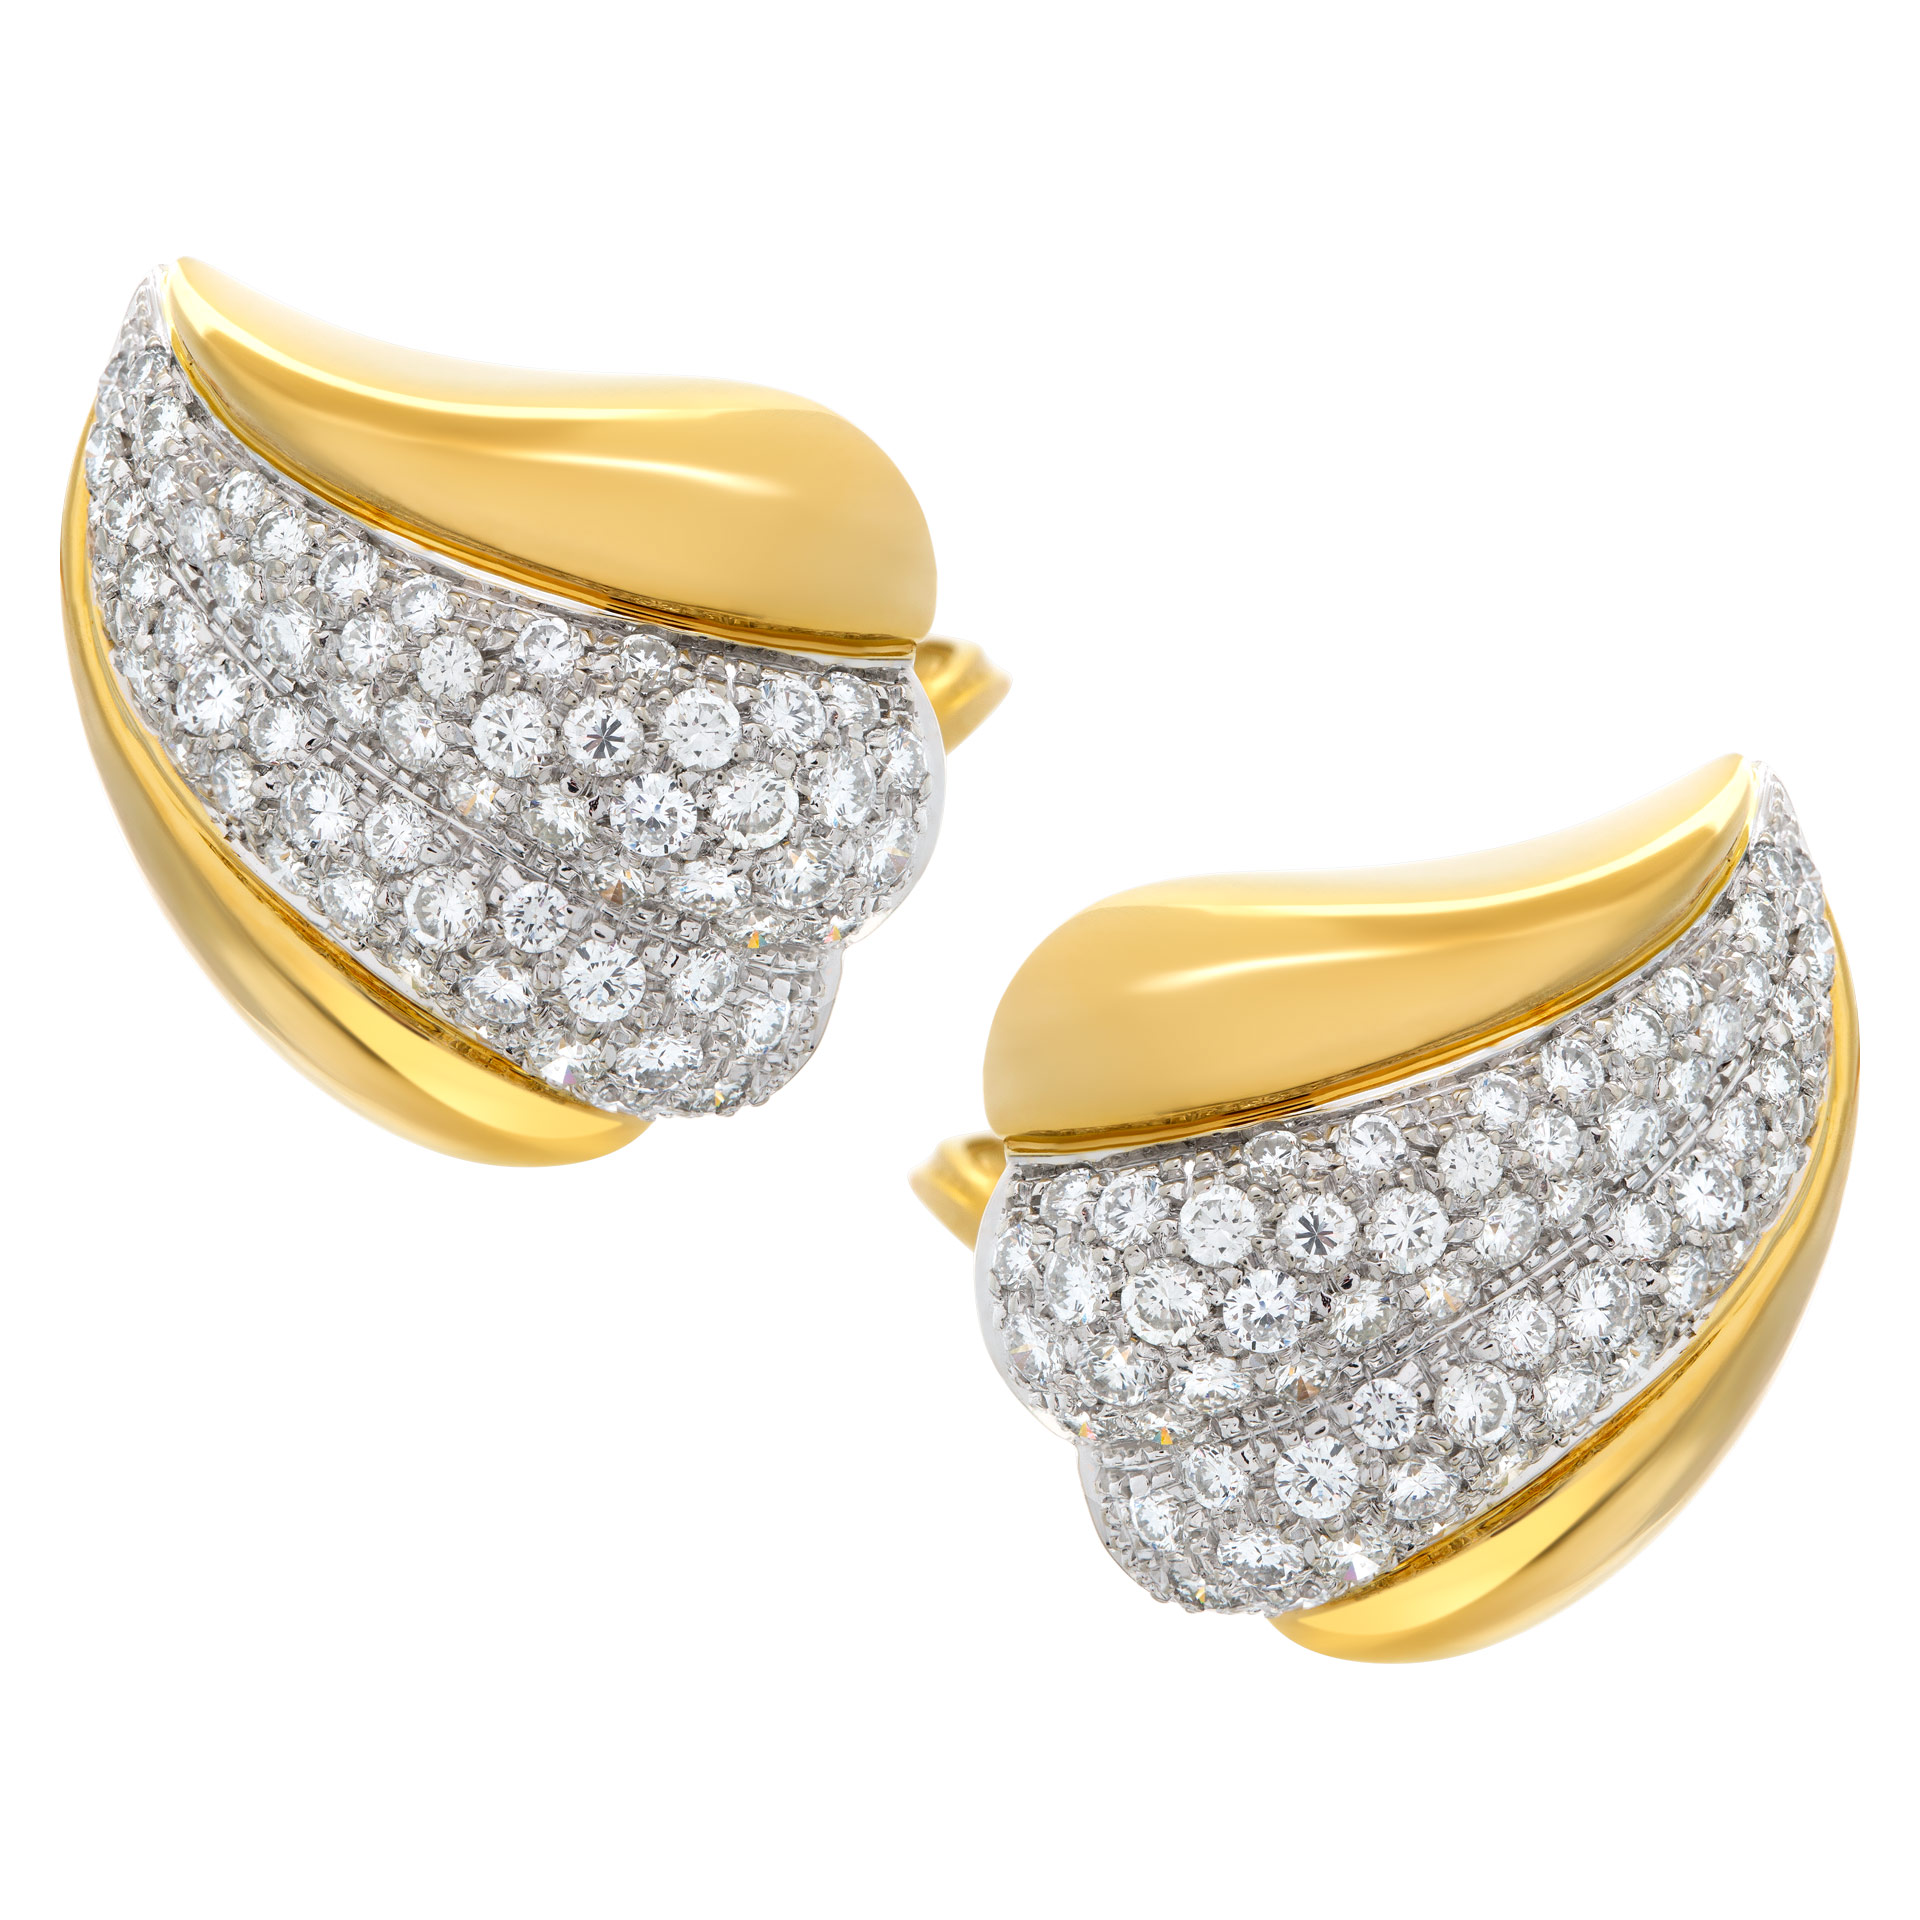 DAMIANI diamonds earrings 18k yellow gold (Stones)